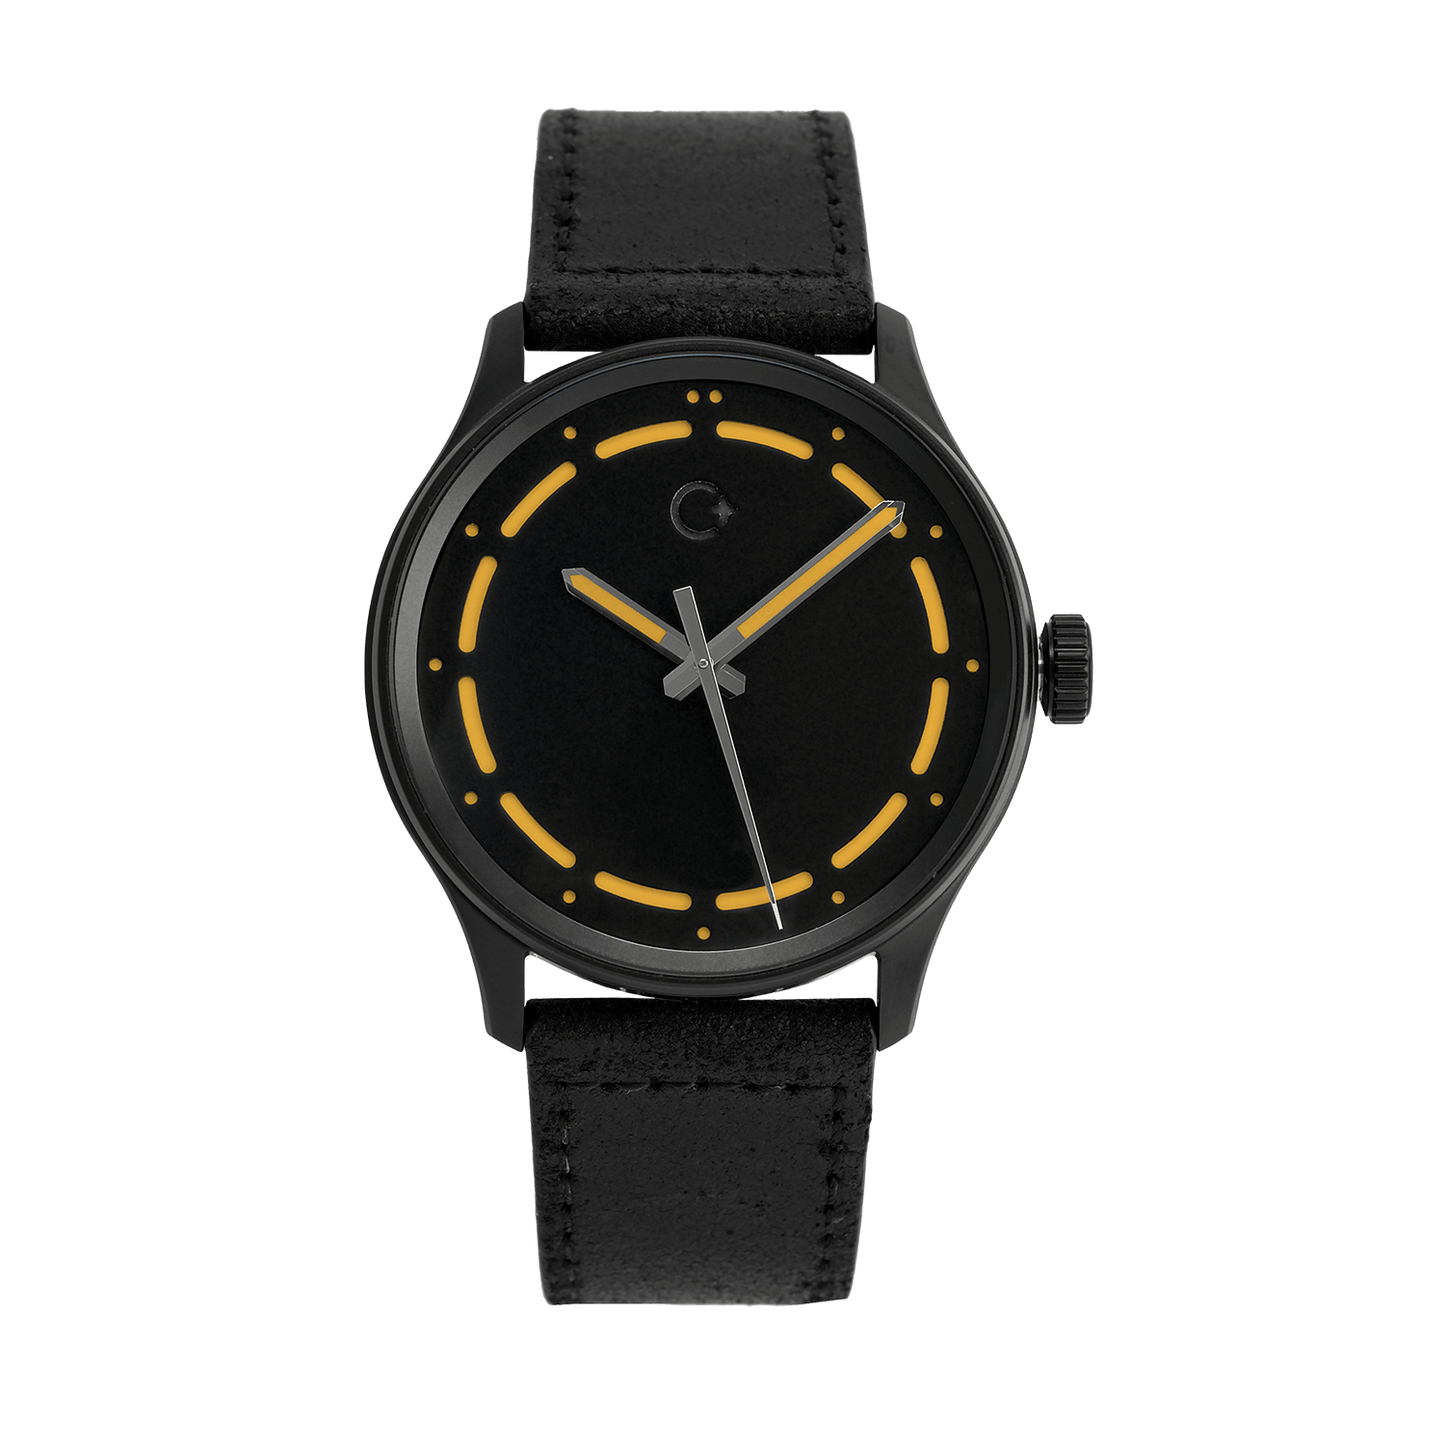 DLC oranžové NanoBlack hodinky od značky Chronotechna, pouzdro 42mm, černý kožený pásek 22mm, rychloupínací stěžejka, vodotěsnost do 100m, Swiss made